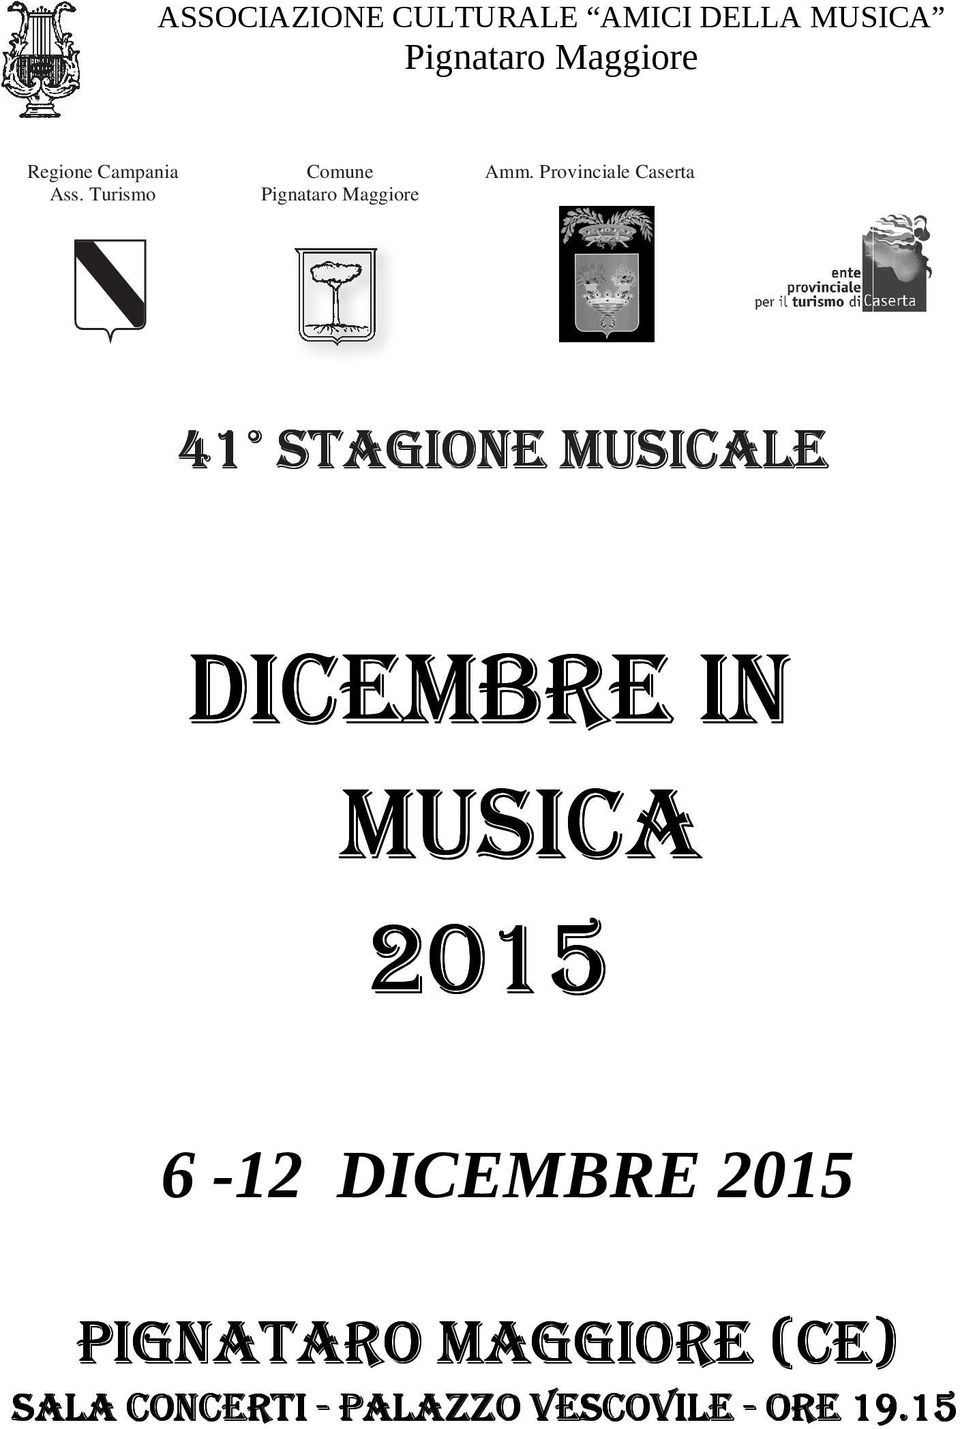 DICEMBRE IN MUSICA 2015 6-12 DICEMBRE 2015